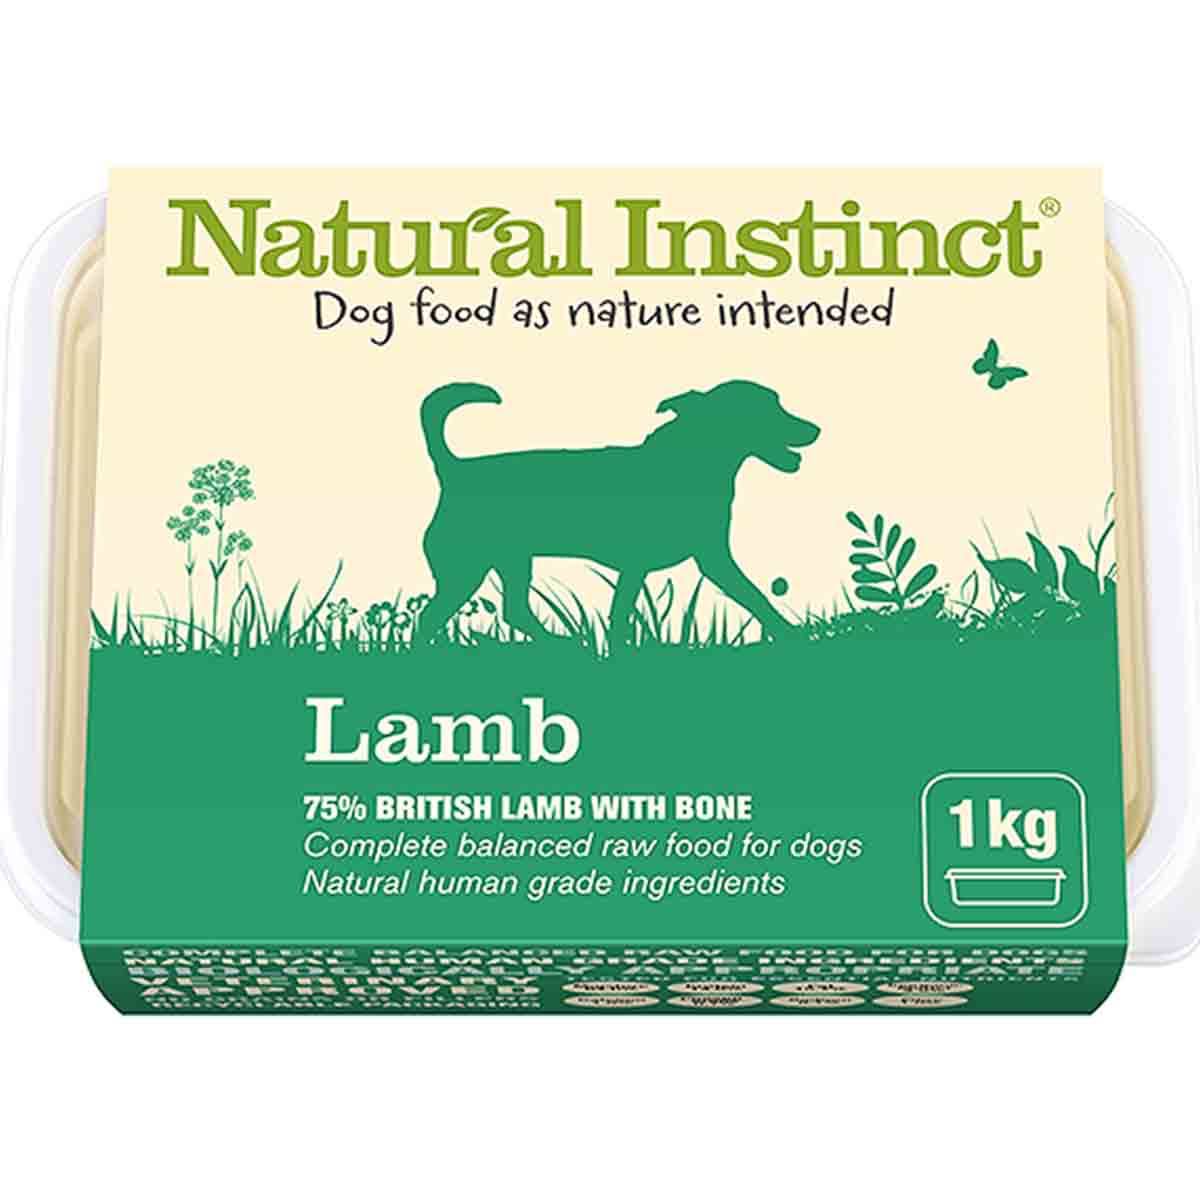 Natural Instinct 1kg Natural Lamb